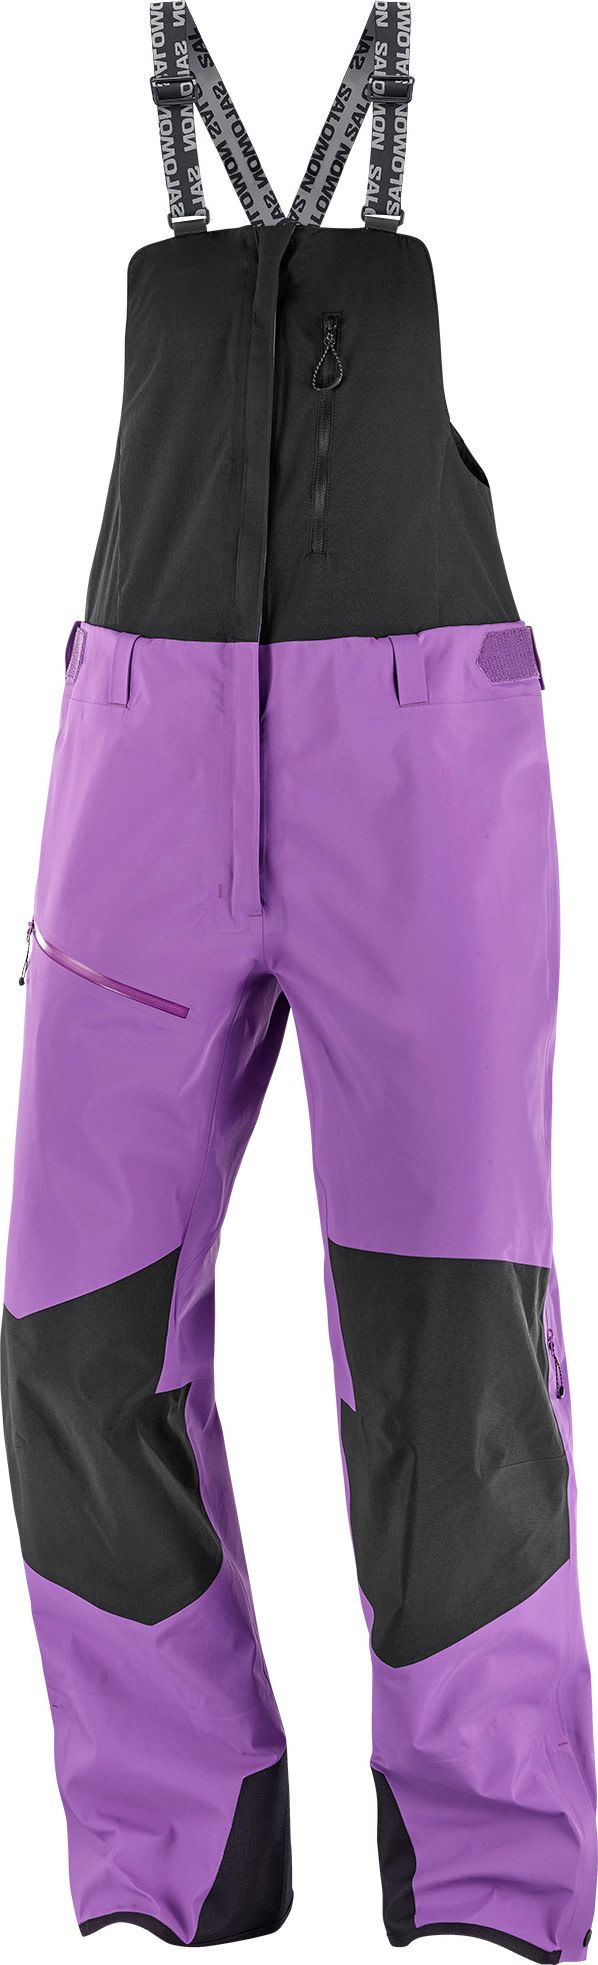 Women's Moon Patrol GORE-TEX Bib Pants Royal Purple/ Salomon